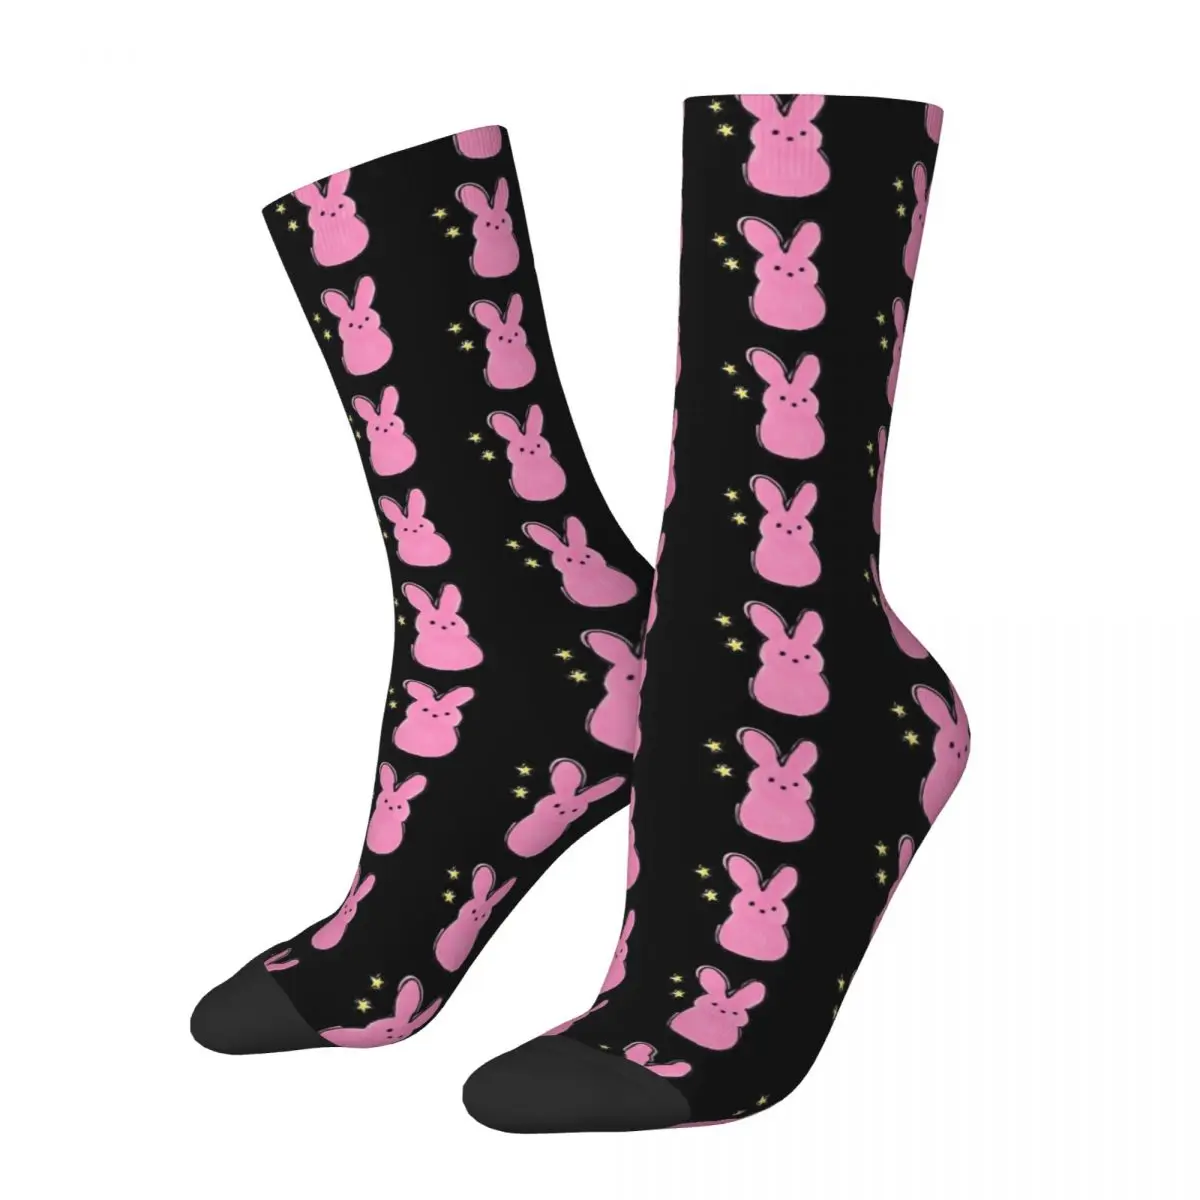 

Носки Lil Peep Bunny для мужчин и женщин, смешные носки из полиэстера, новинка, носки средней длины на весну, лето, осень, зиму, подарки